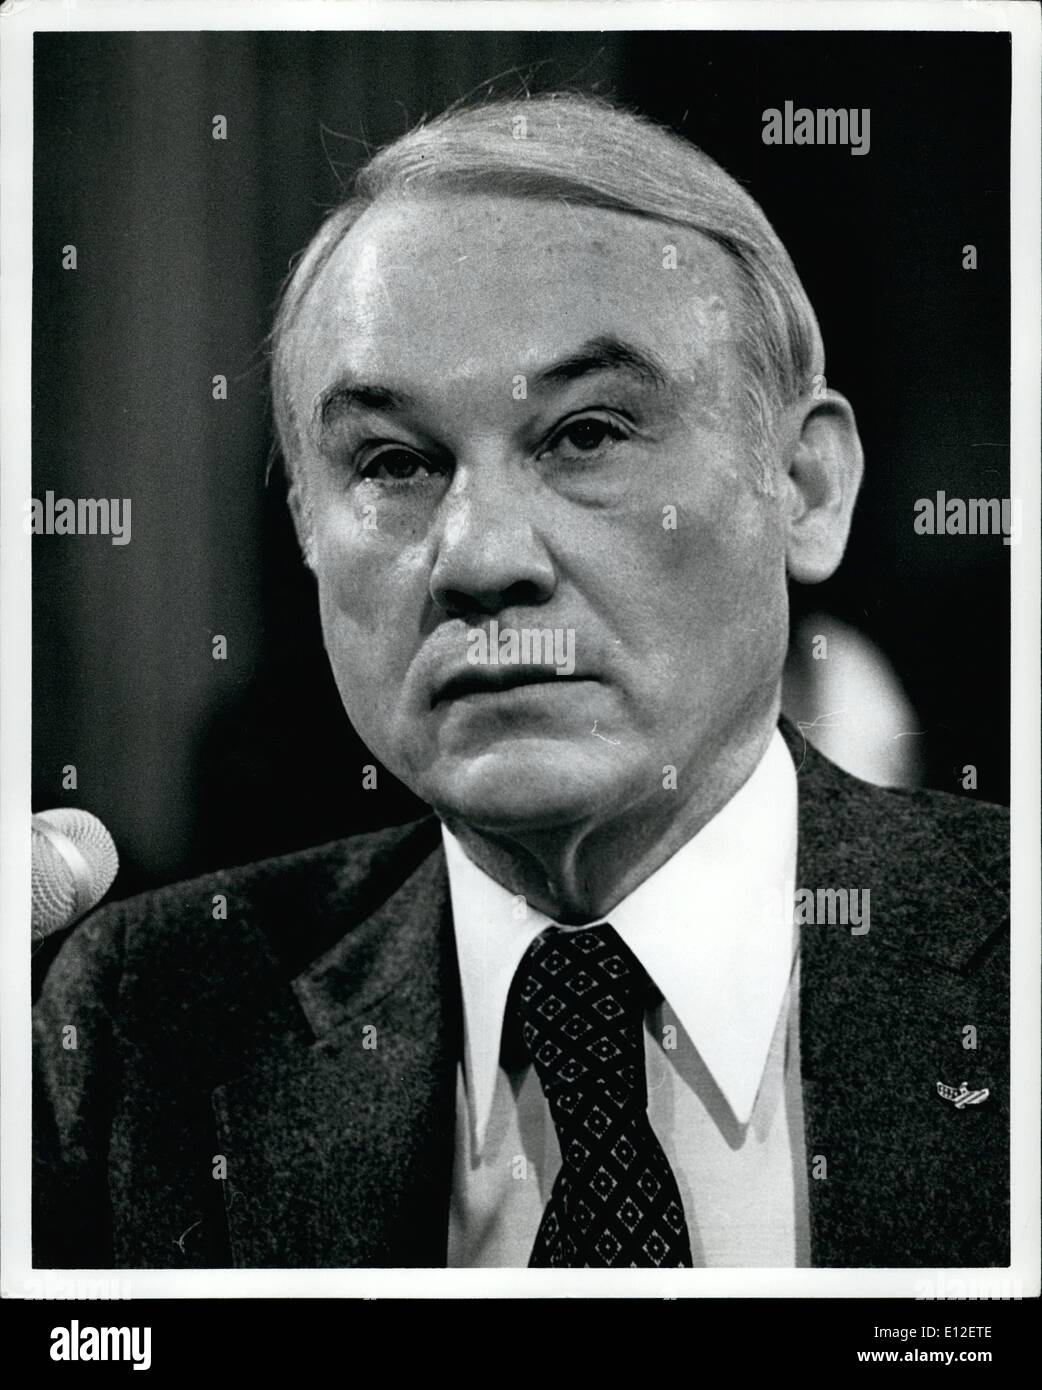 21 dicembre 2011 - febbraio 1980, G. Capitol Hill, lavare, D.C. G. William Miller testimonianza prima un sottocomitato del senato sul settore bancario. Foto Stock